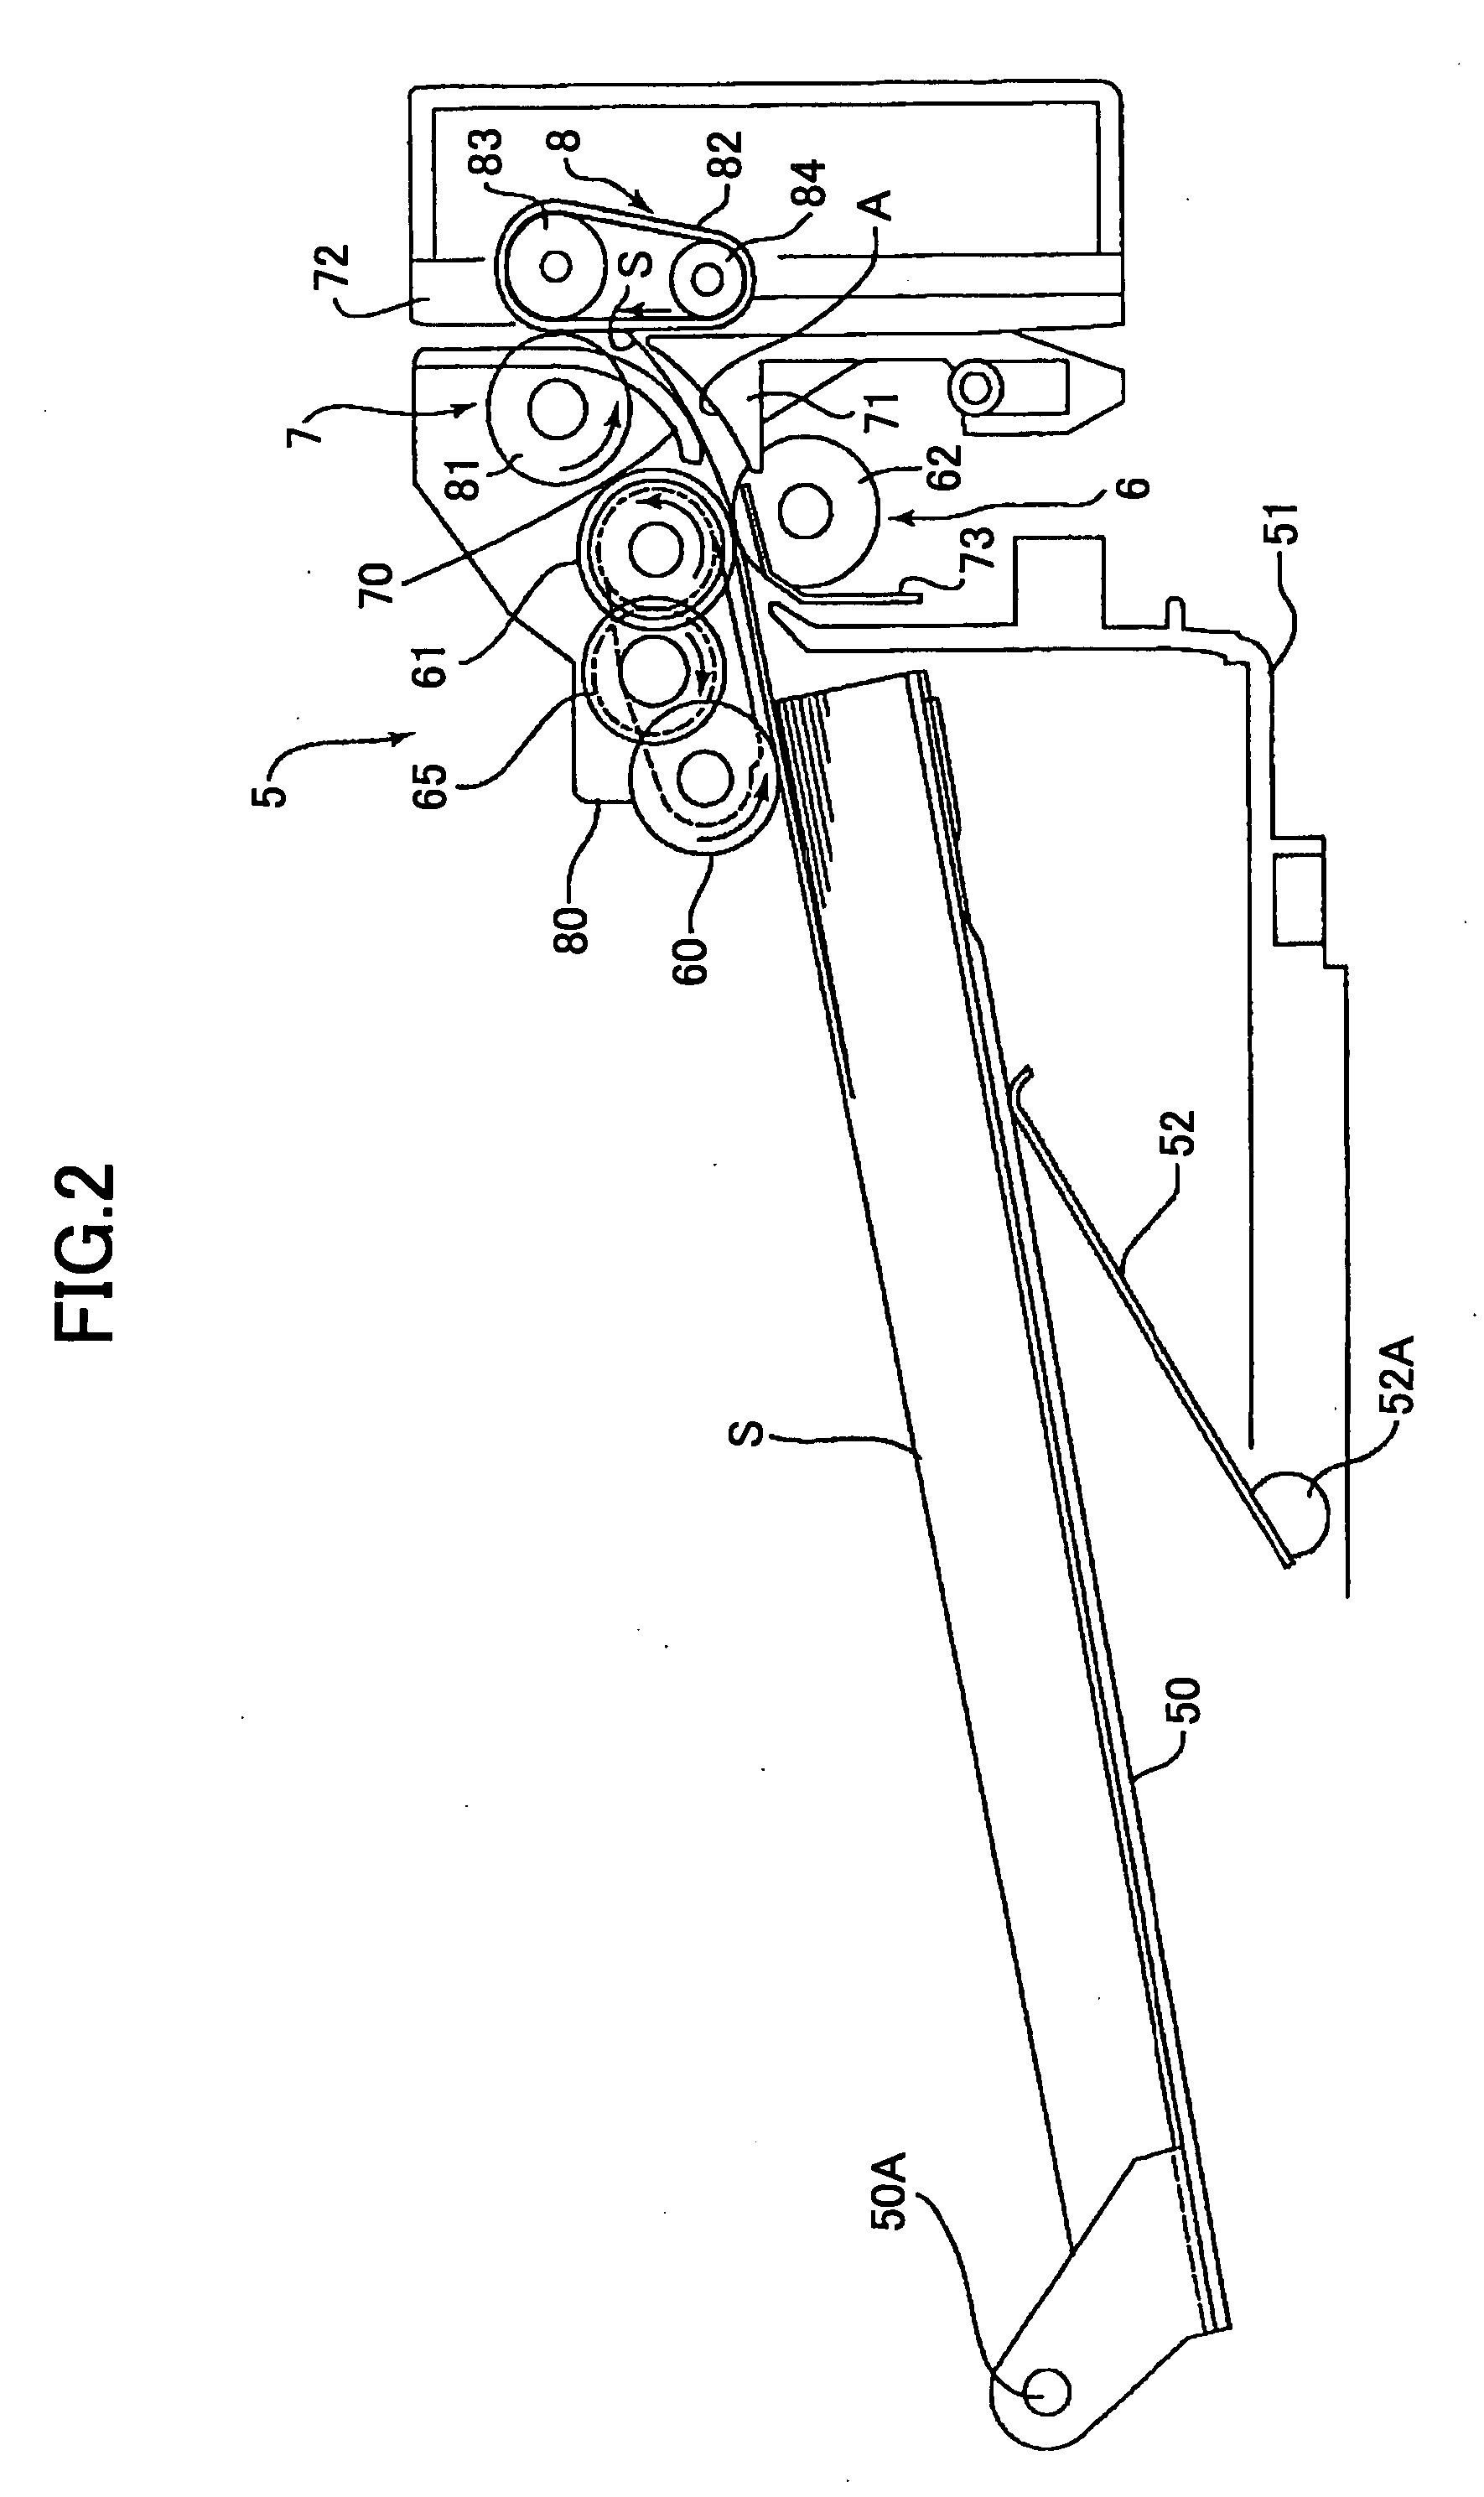 Sheet conveying apparatus, image scanning apparatus, and image forming apparatus